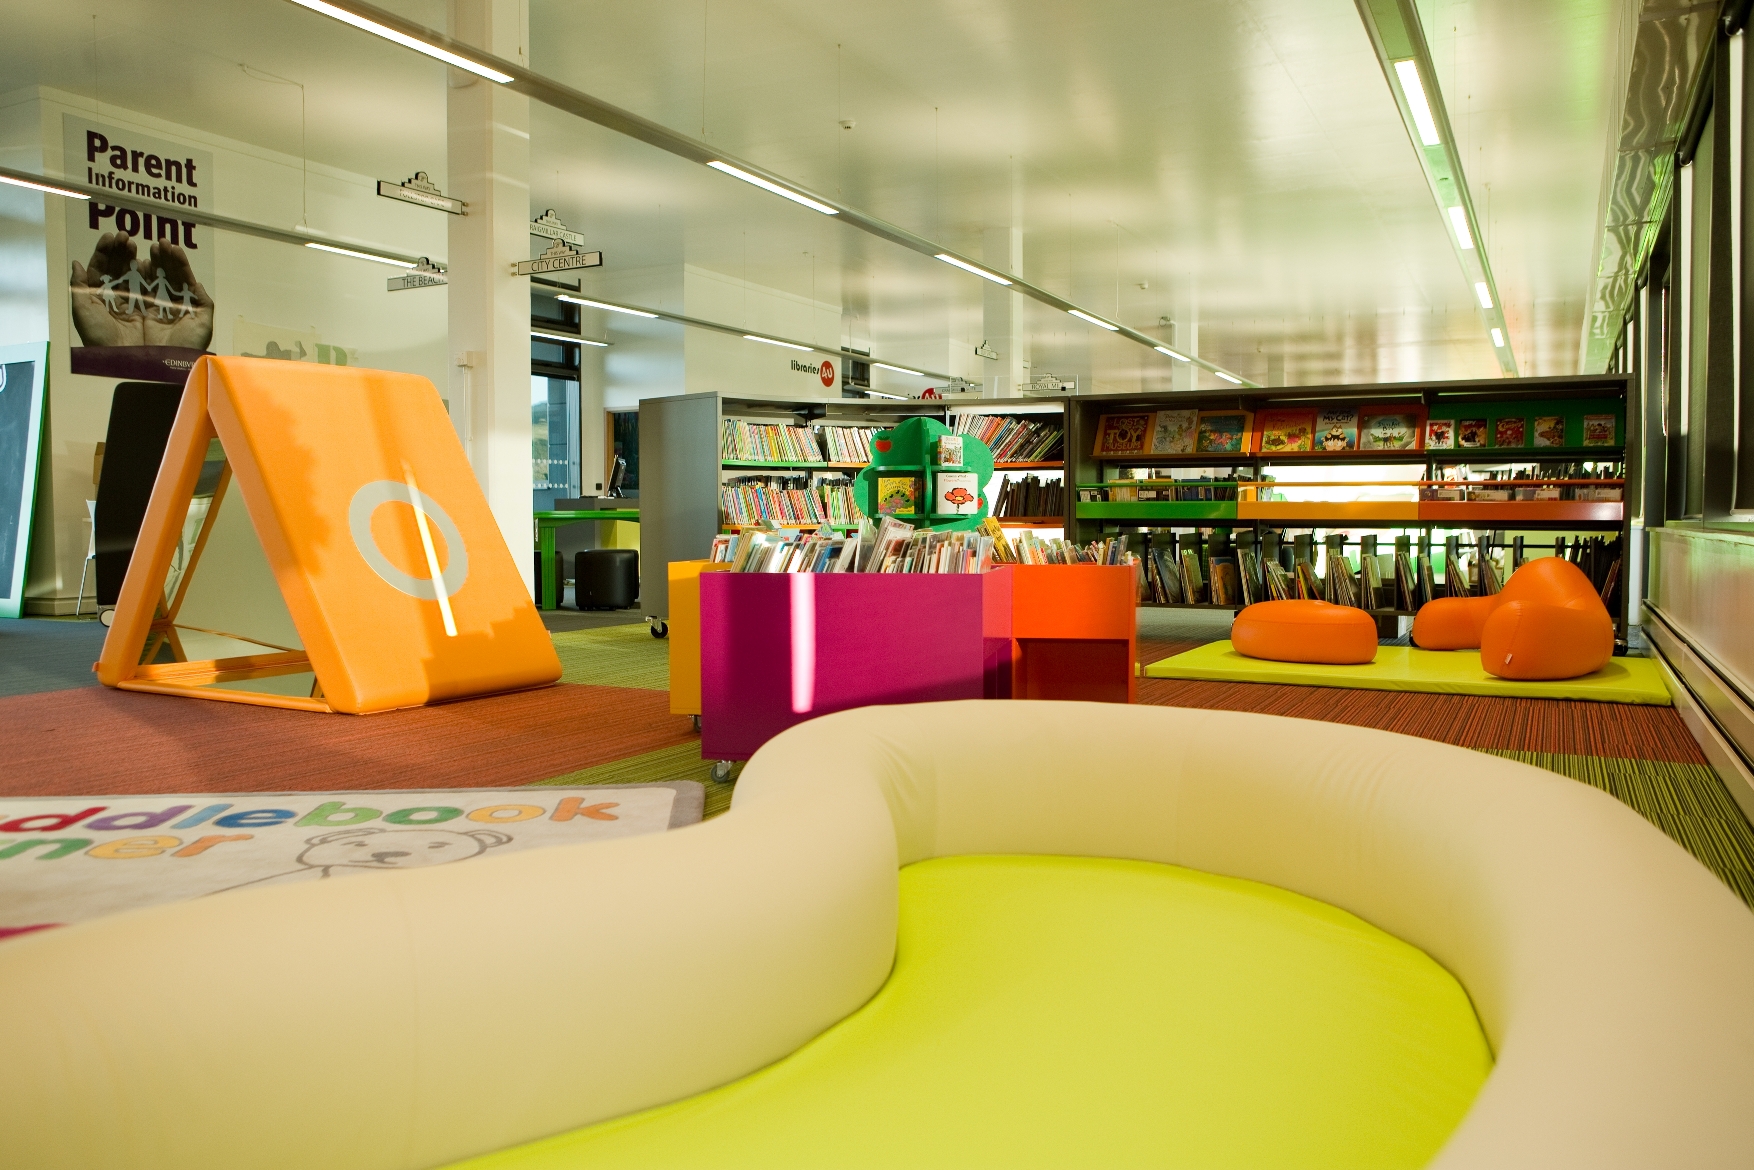 Craigmillar_Children's Library